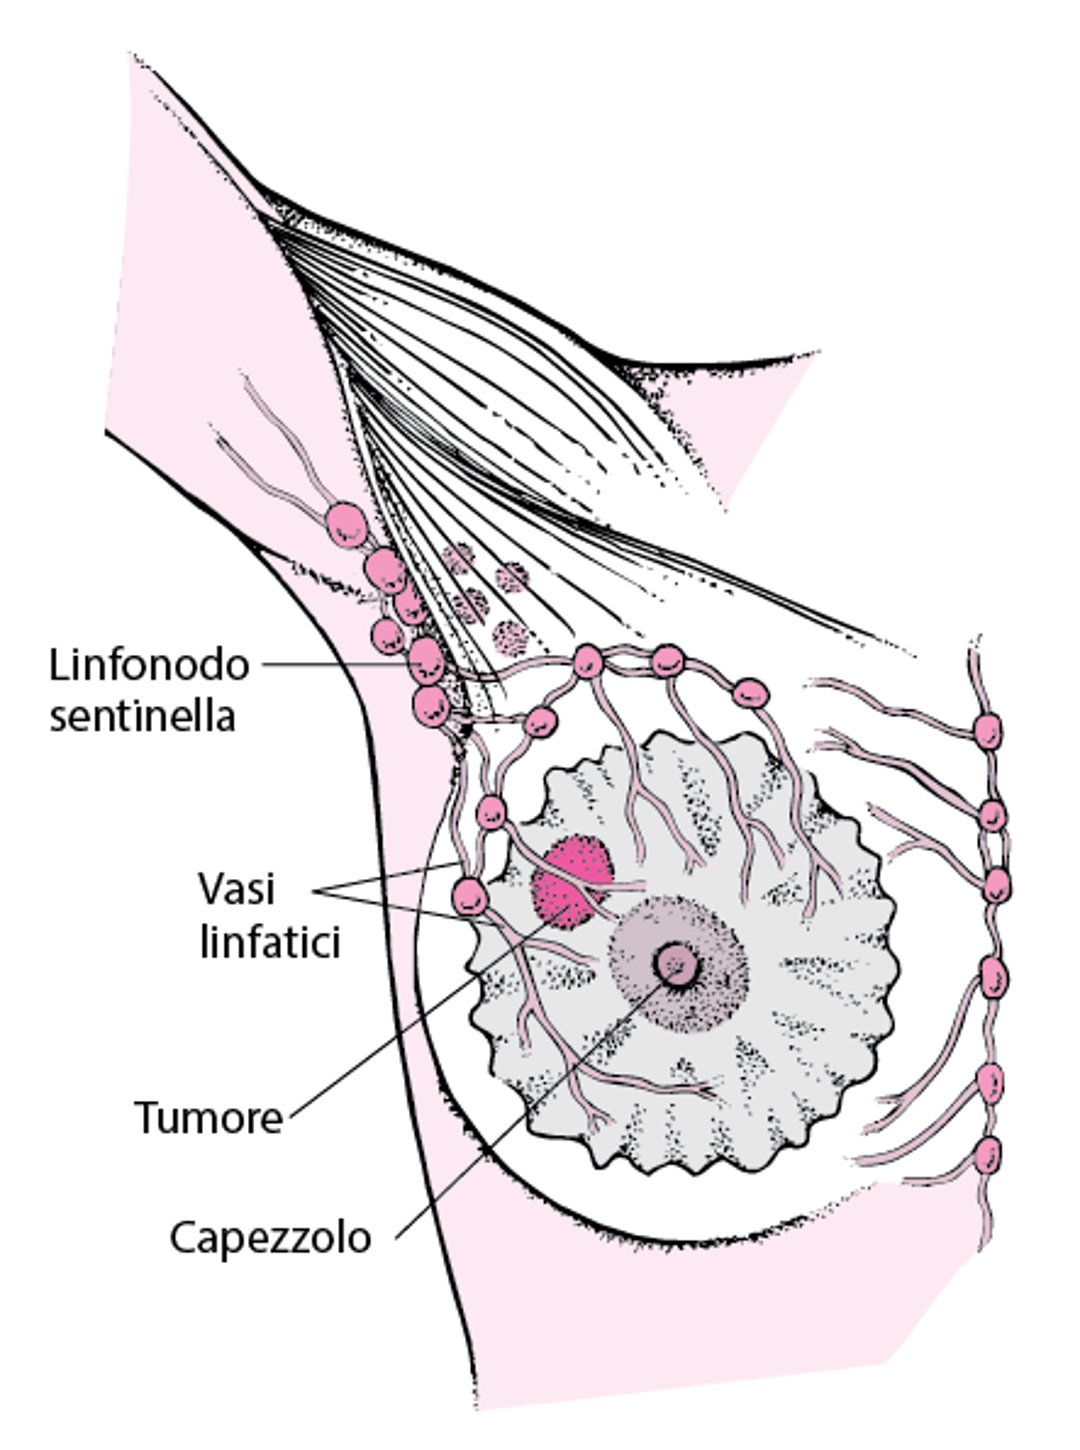 Che cos’è un linfonodo sentinella?